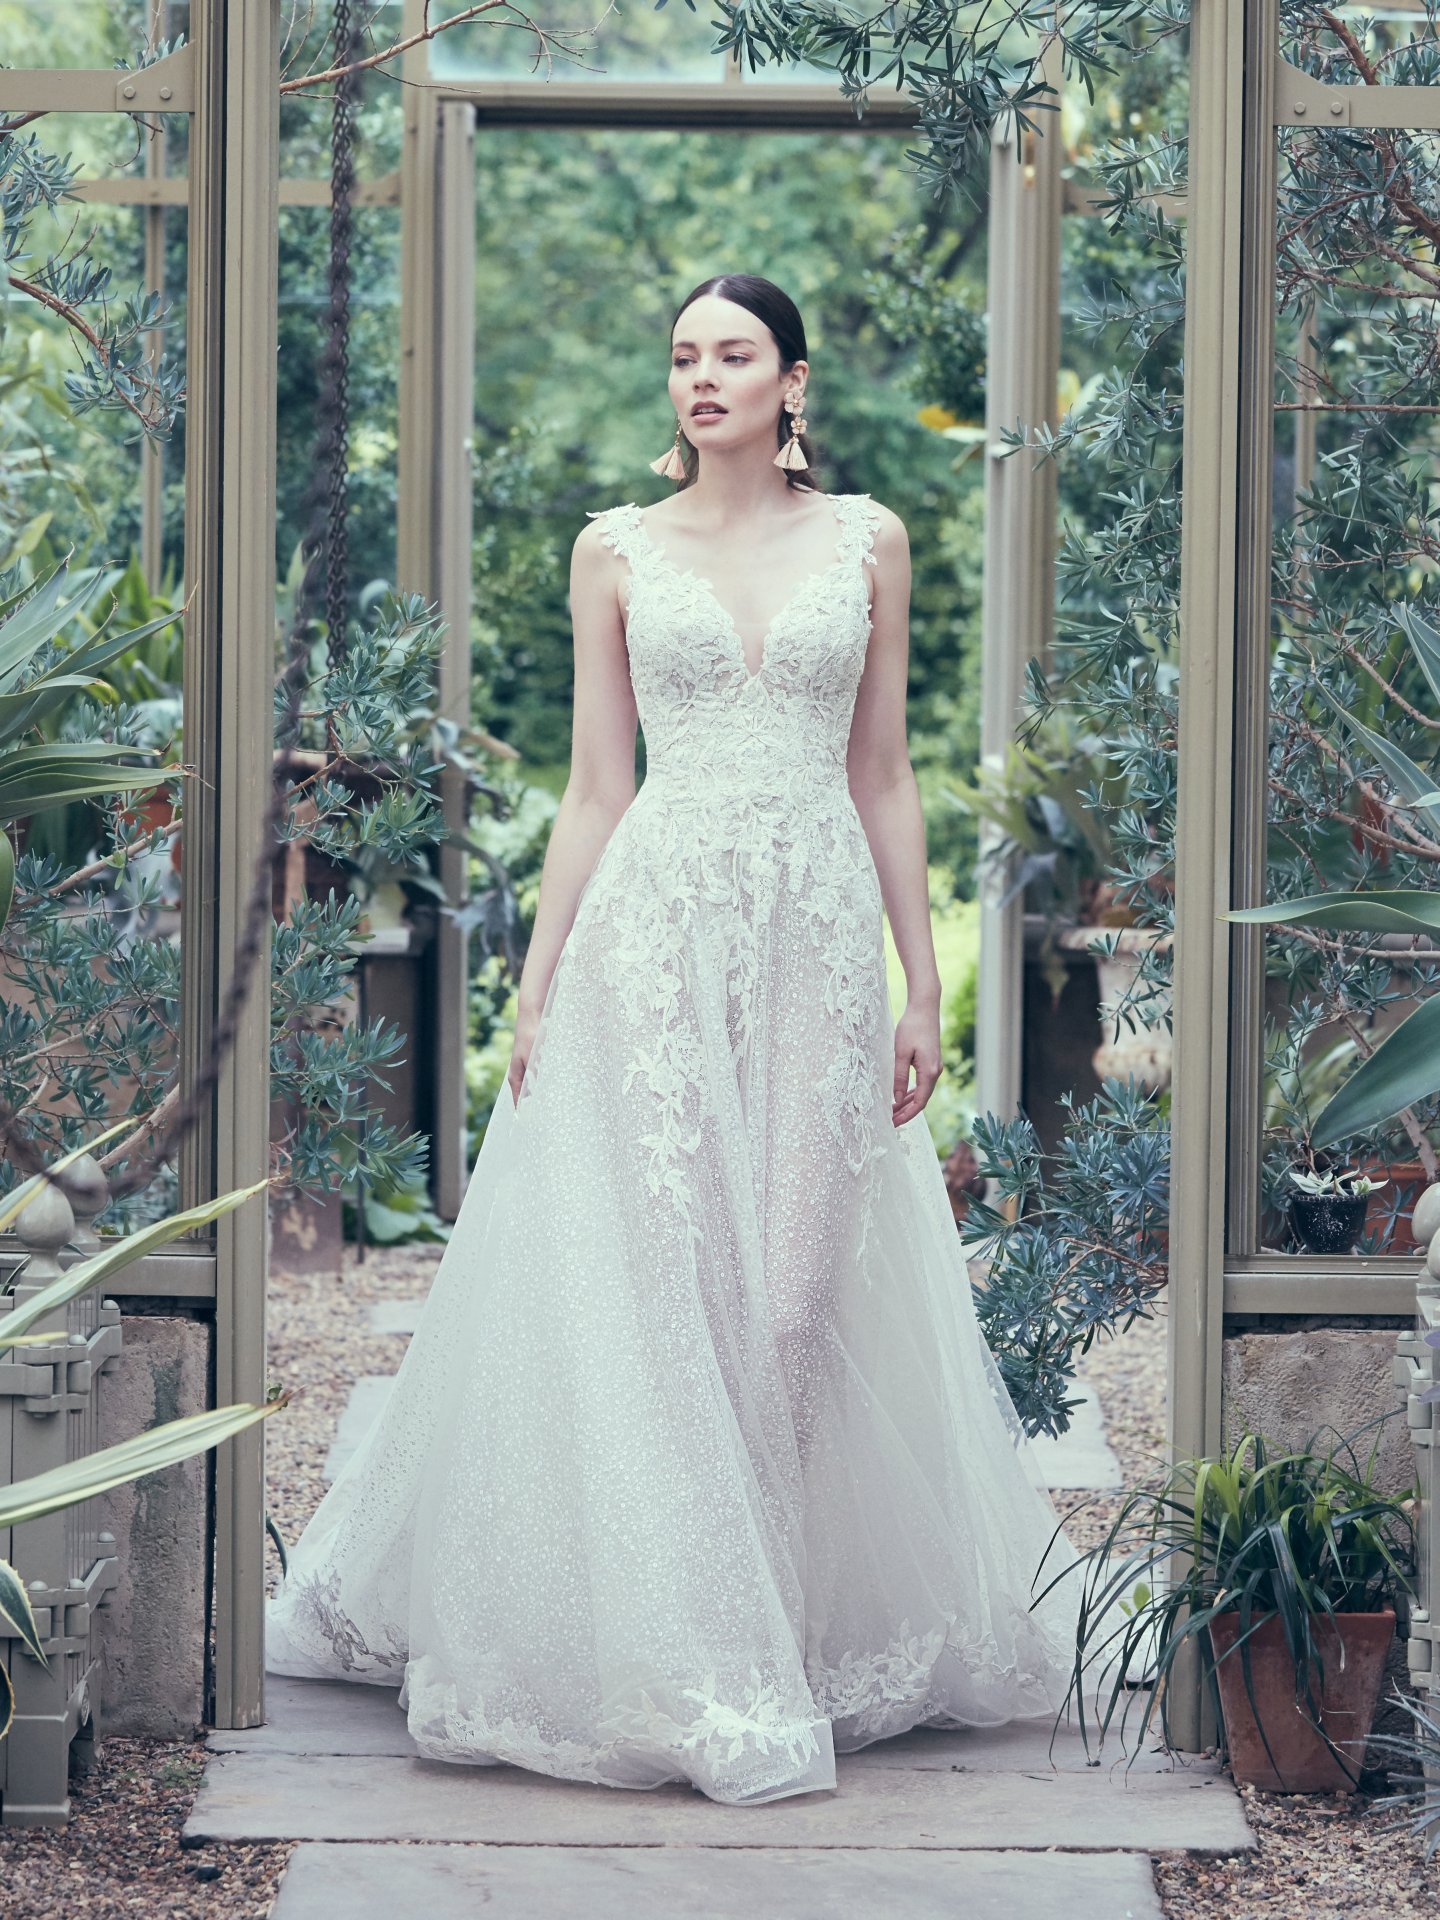 Casamarela: curadoria de vestidos de noiva internacionais para encantar e realizar seu sonho